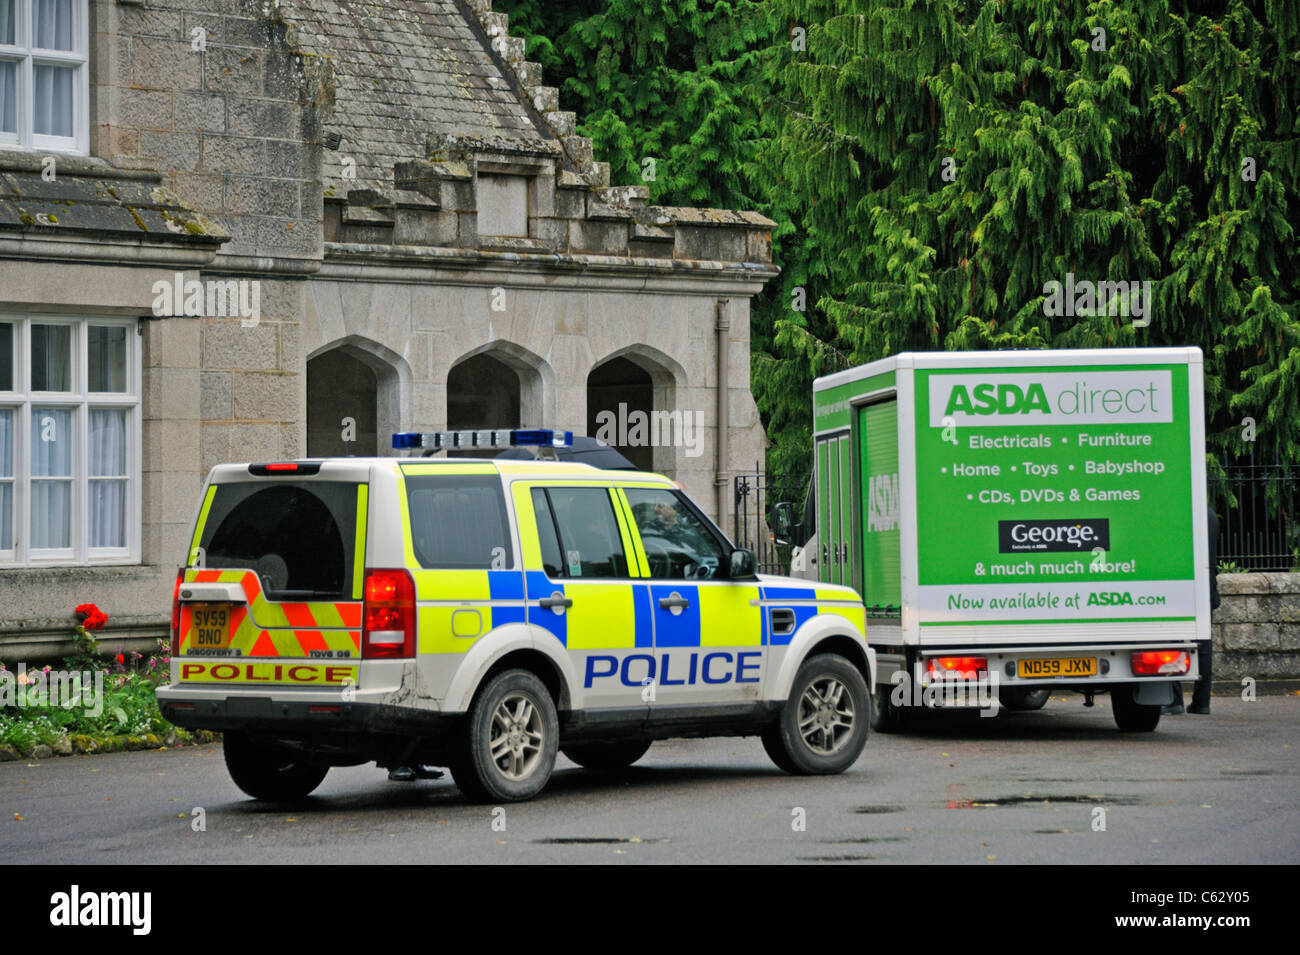 Voiture de police et l'ASDA camion de livraison à l'entrée pour le château de Balmoral. Balmoral, Royal Deeside, Aberdeenshire, Ecosse, Royaume-Uni. Banque D'Images